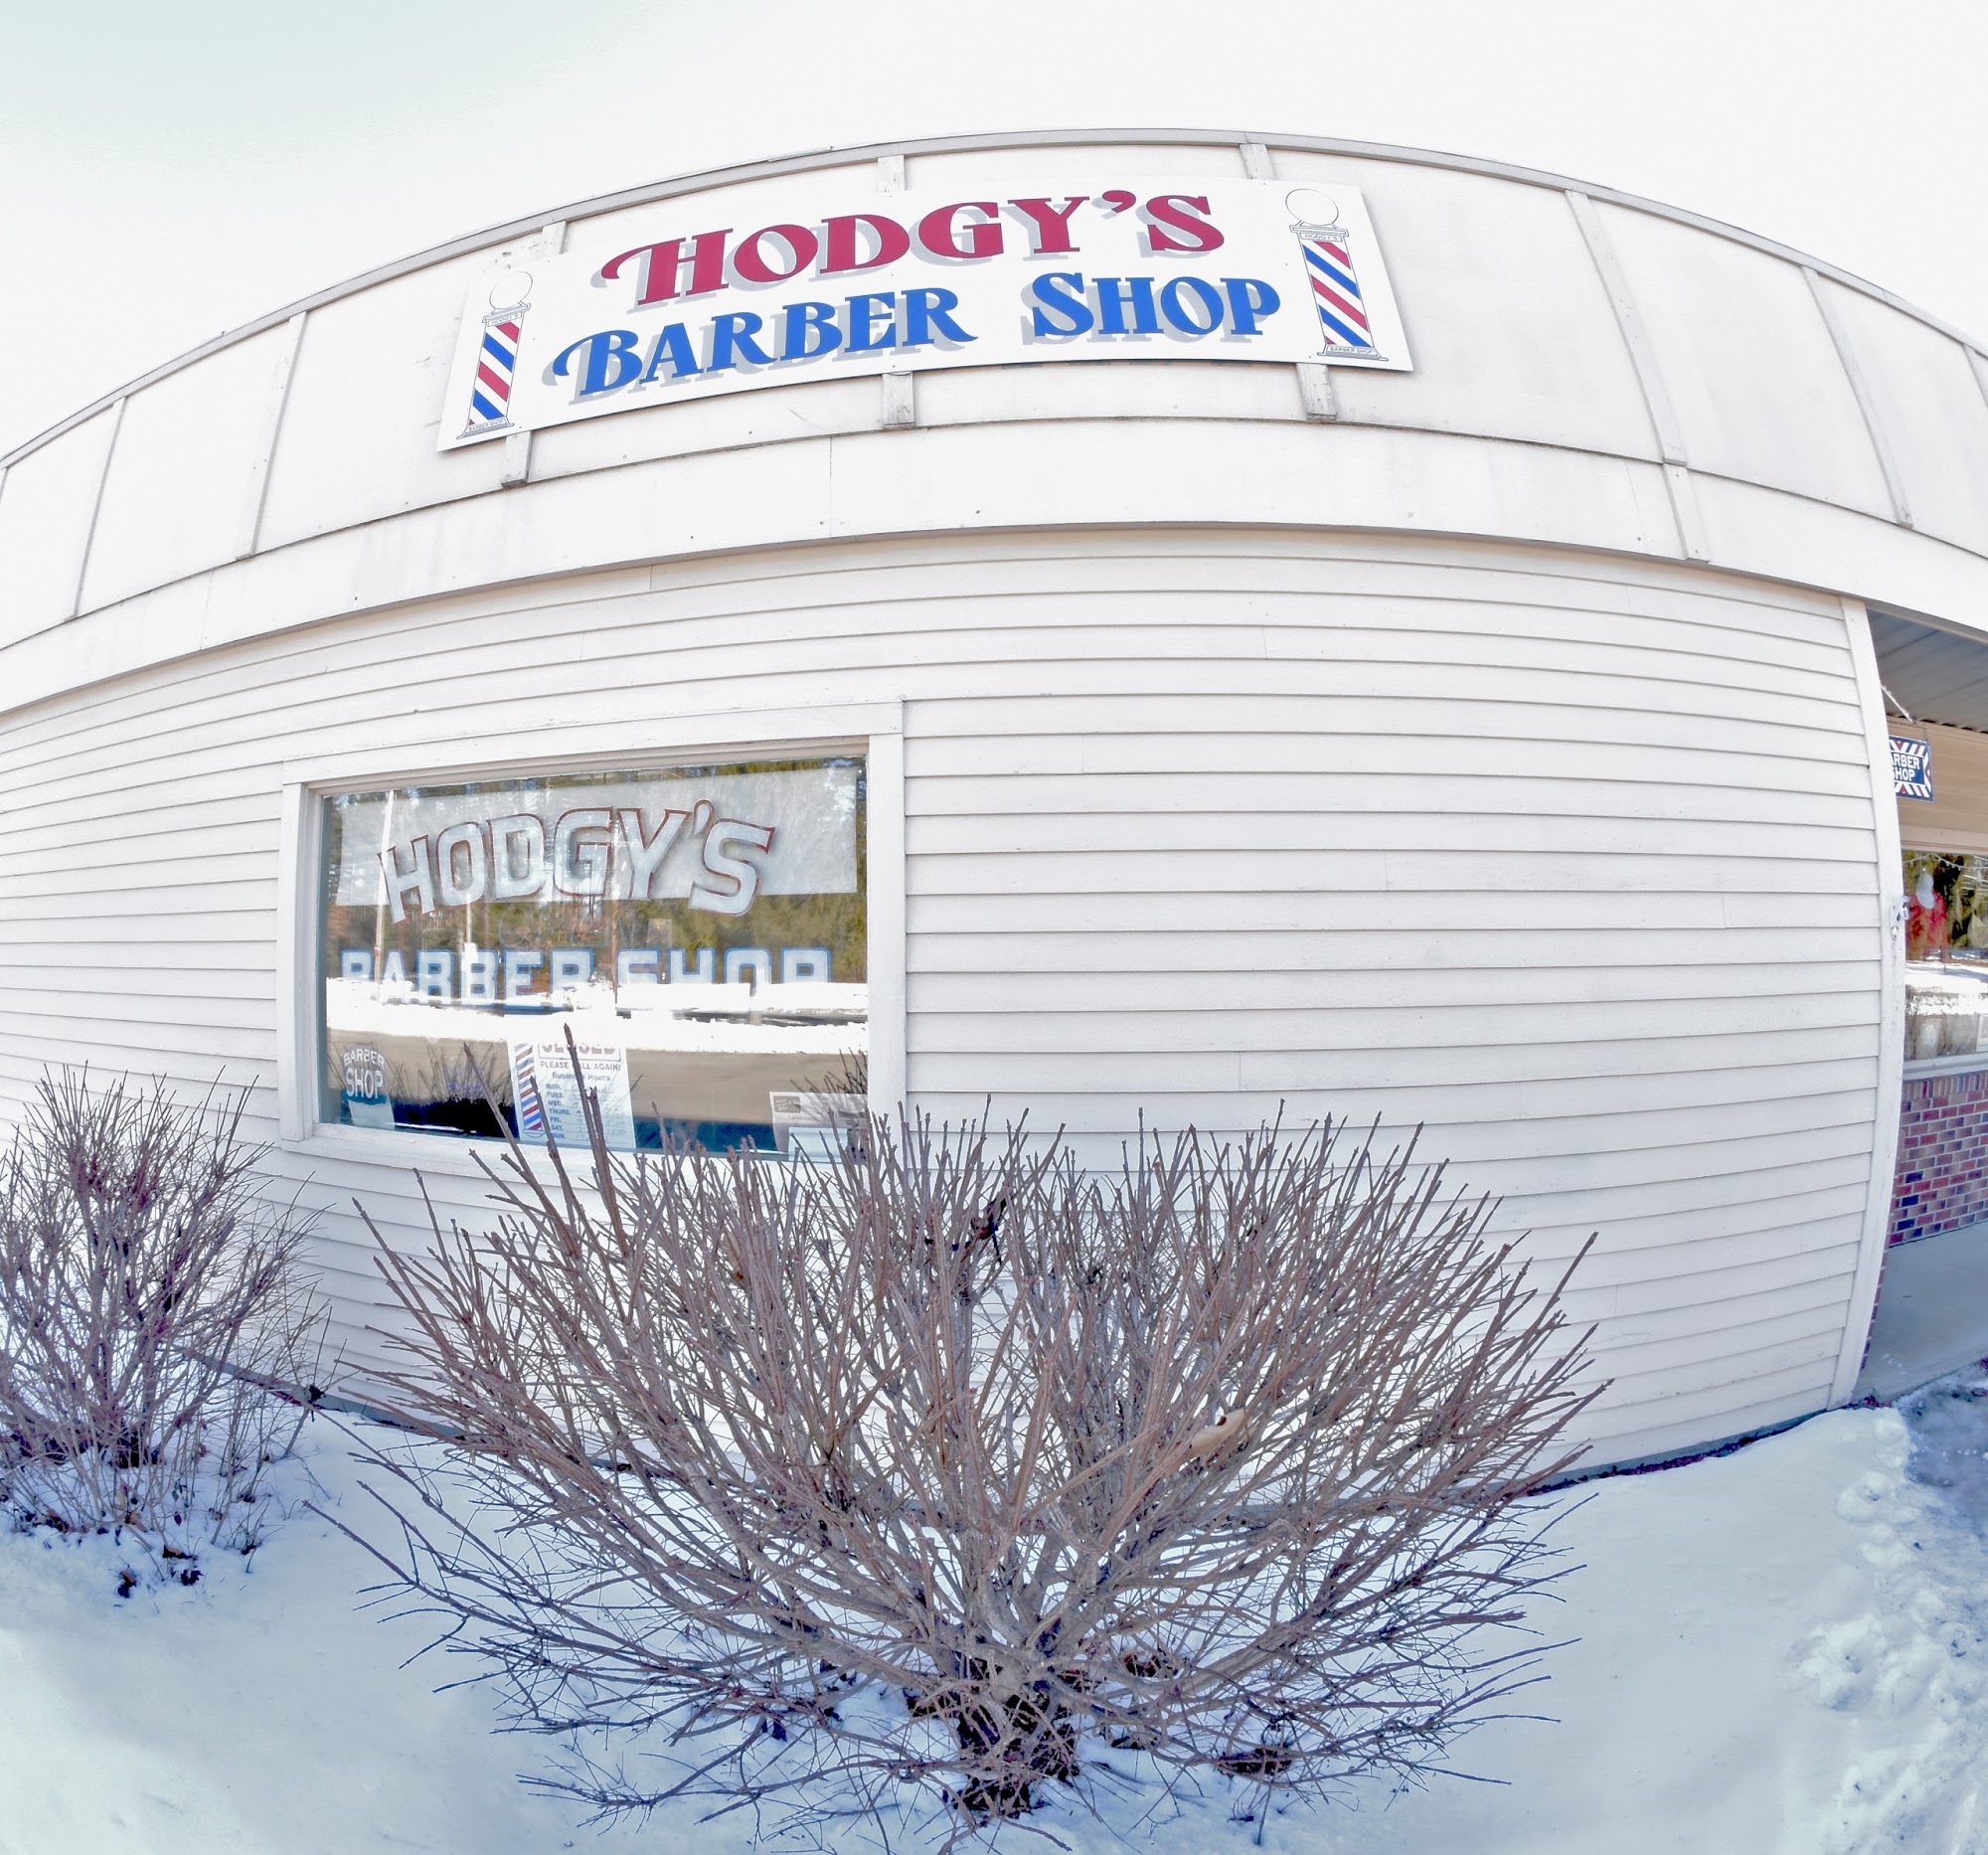 Hodgy's Barbershop